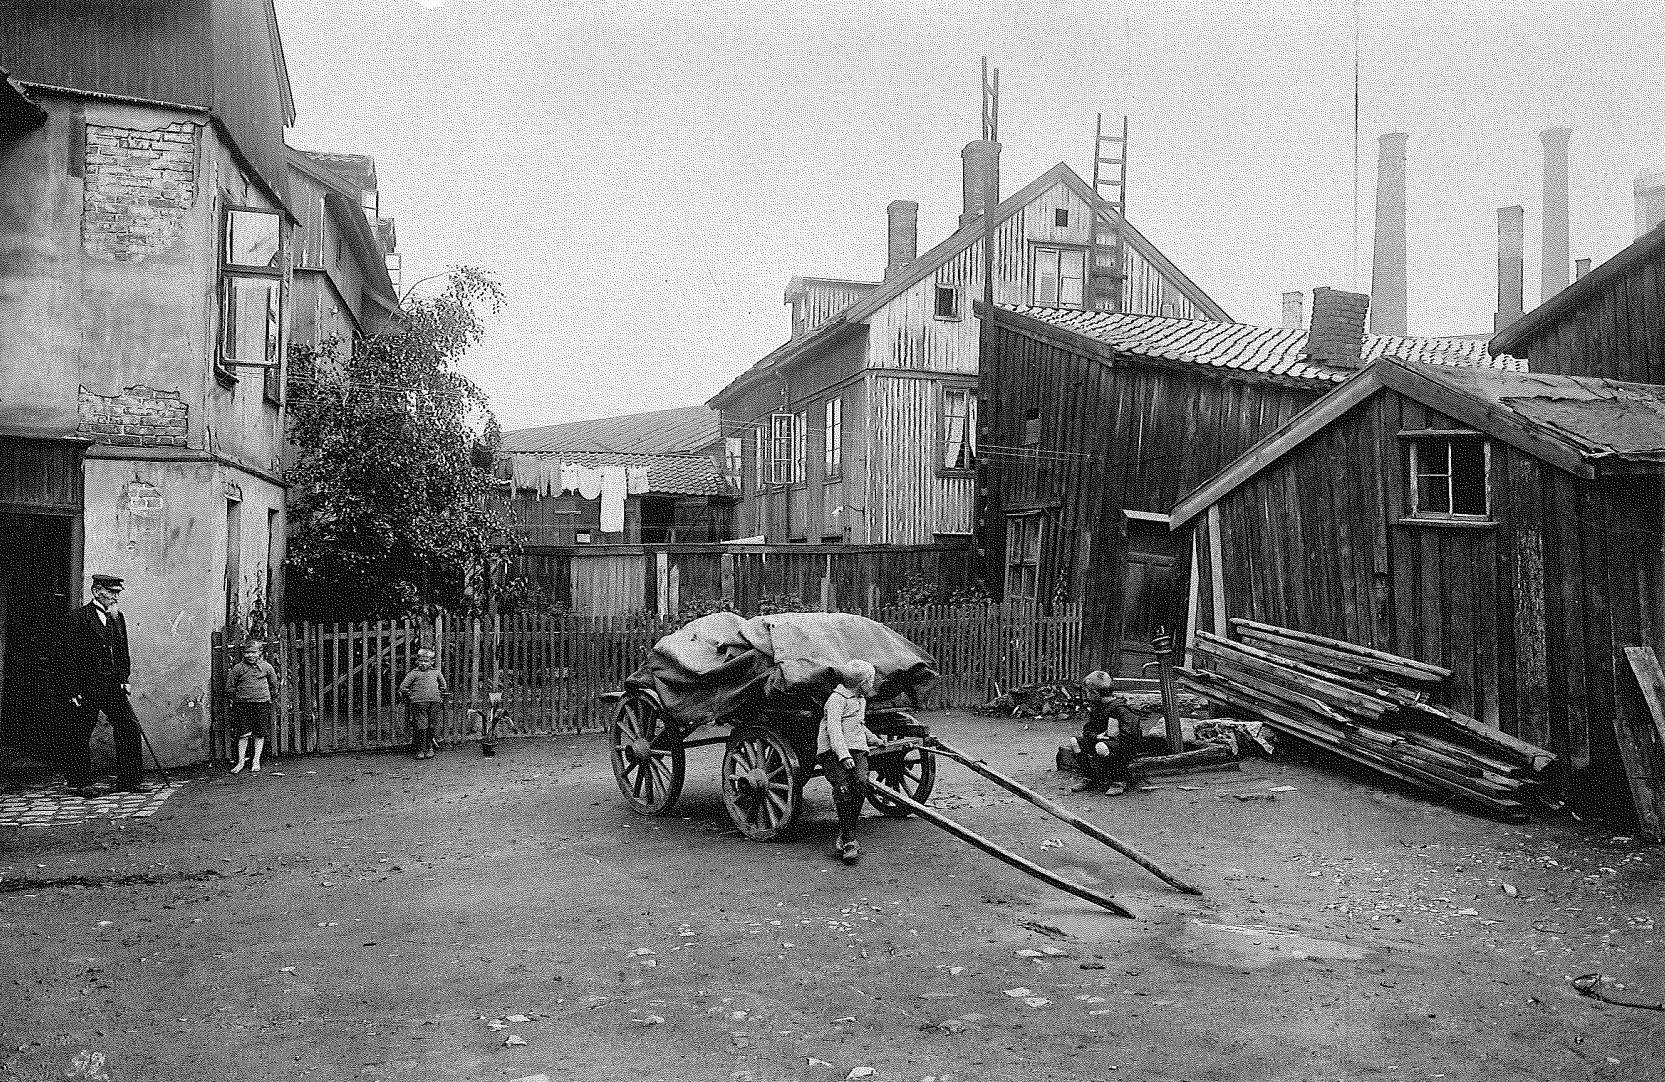 KUMMERLIG: Slik så fabrikken ut i 1892 da Throne Holst tok over driften av Freia. Han kjøpte fabrikken til 9000 kroner. Foto: Freia